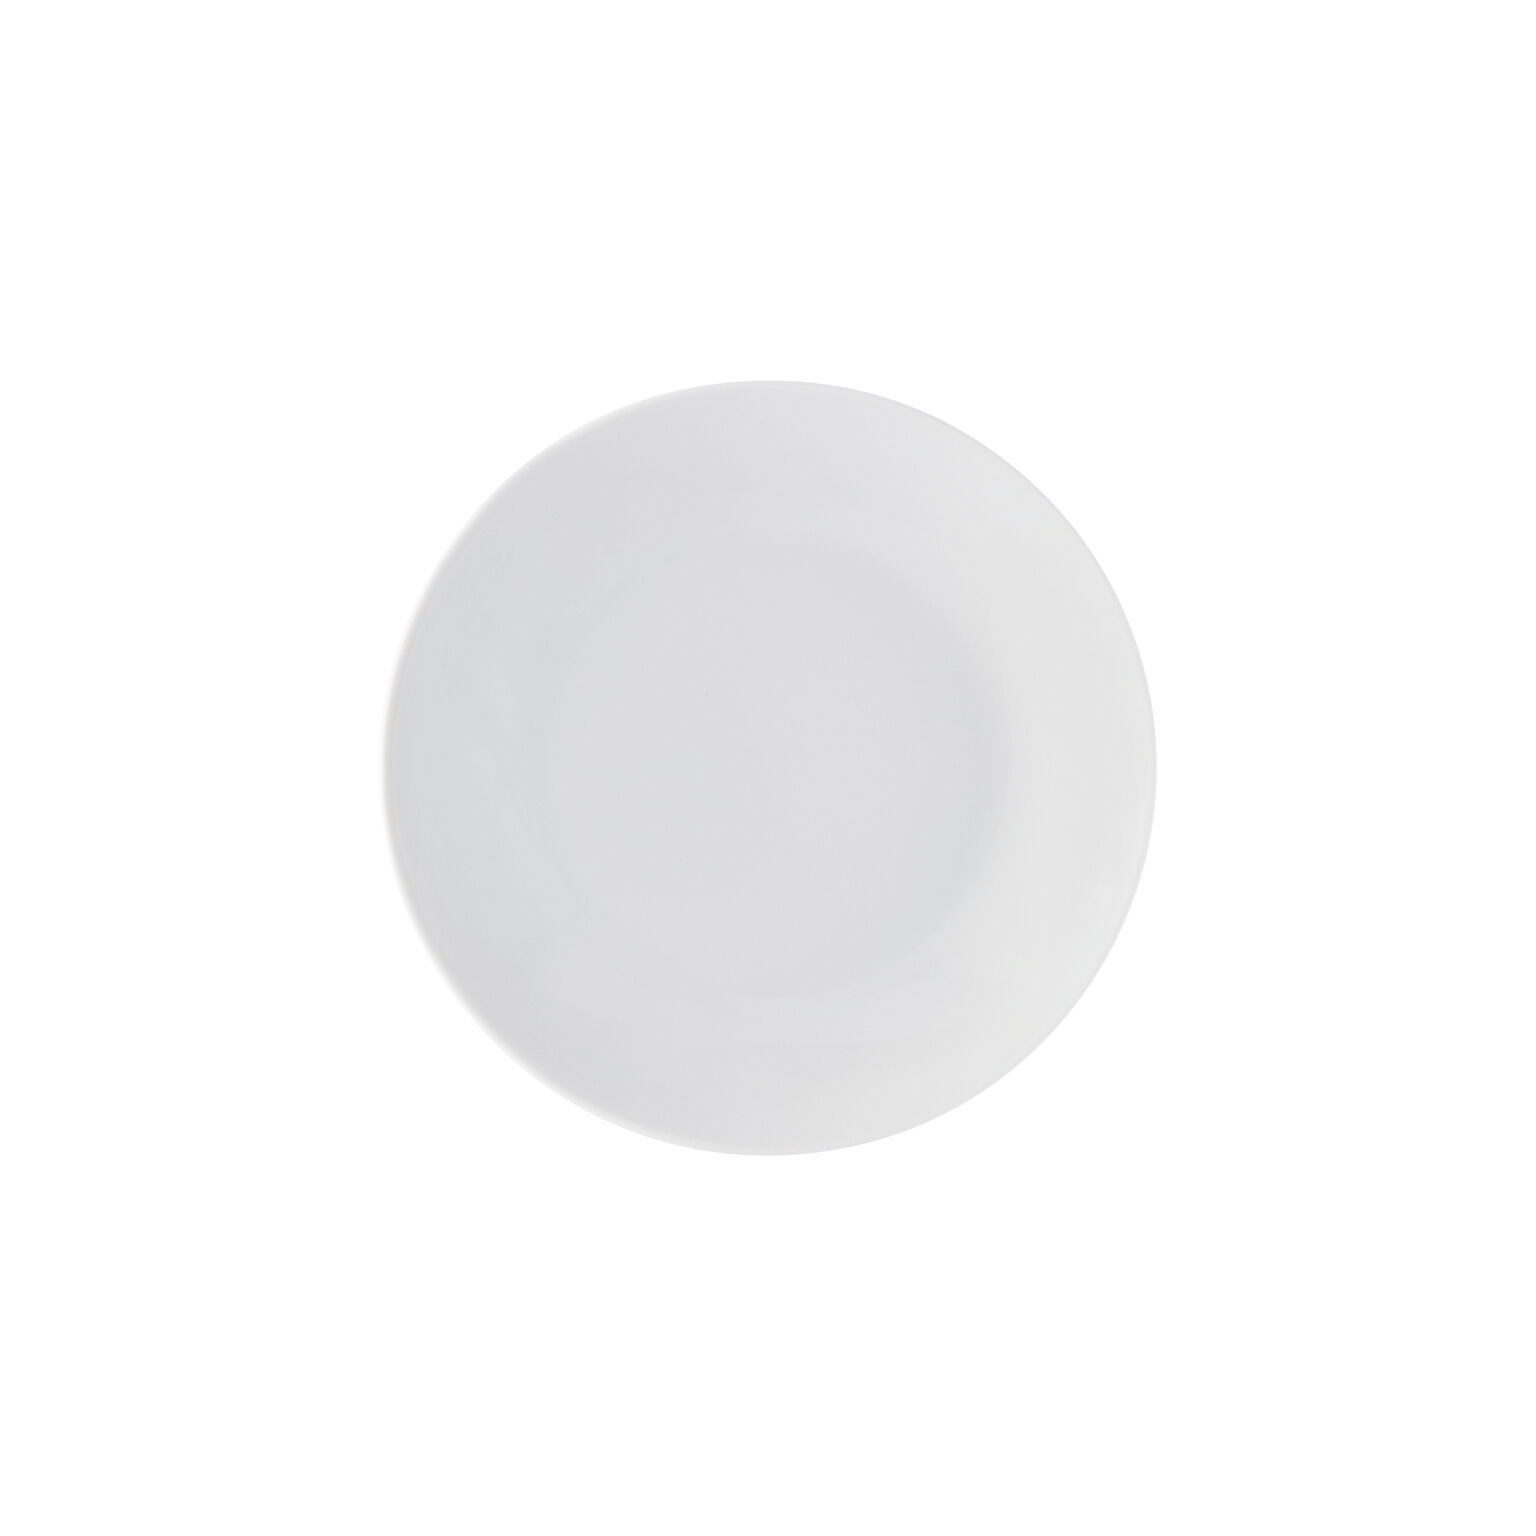 10321 Porcelain soup plate White 21 x 21 x 4 cm Arzberg 42000-800001 21 cm 